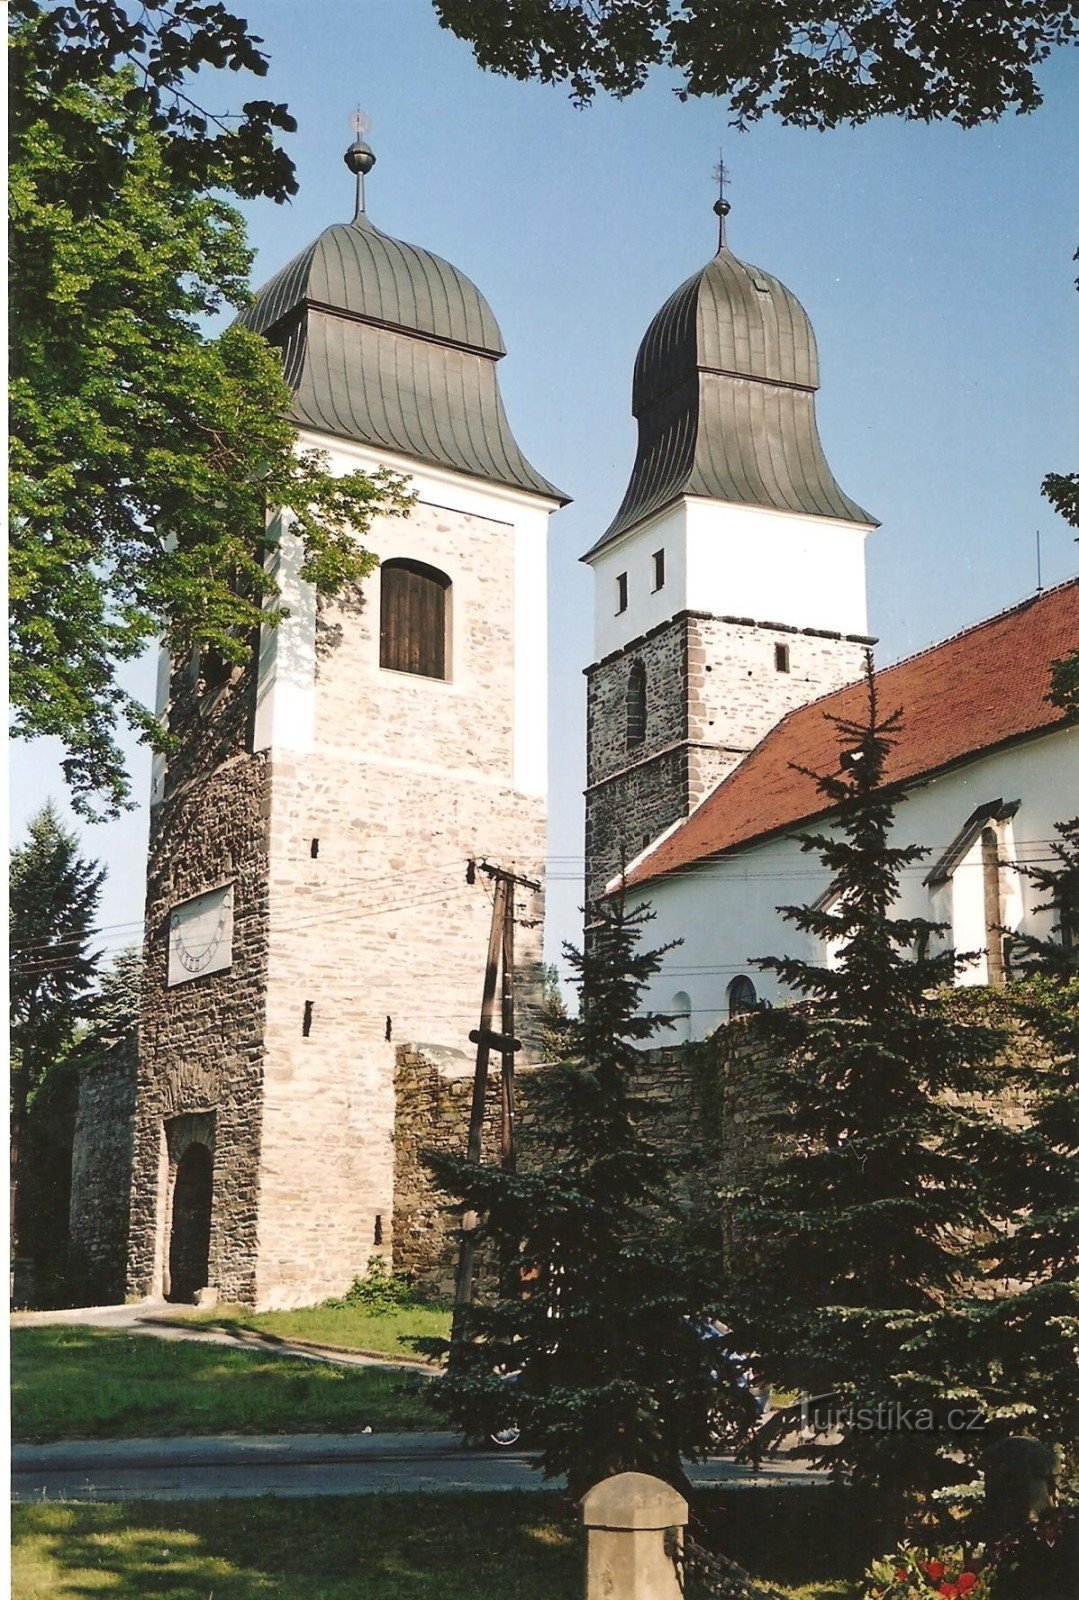 Turnul castelului de la biserica Sf. Ioan Botezatorul